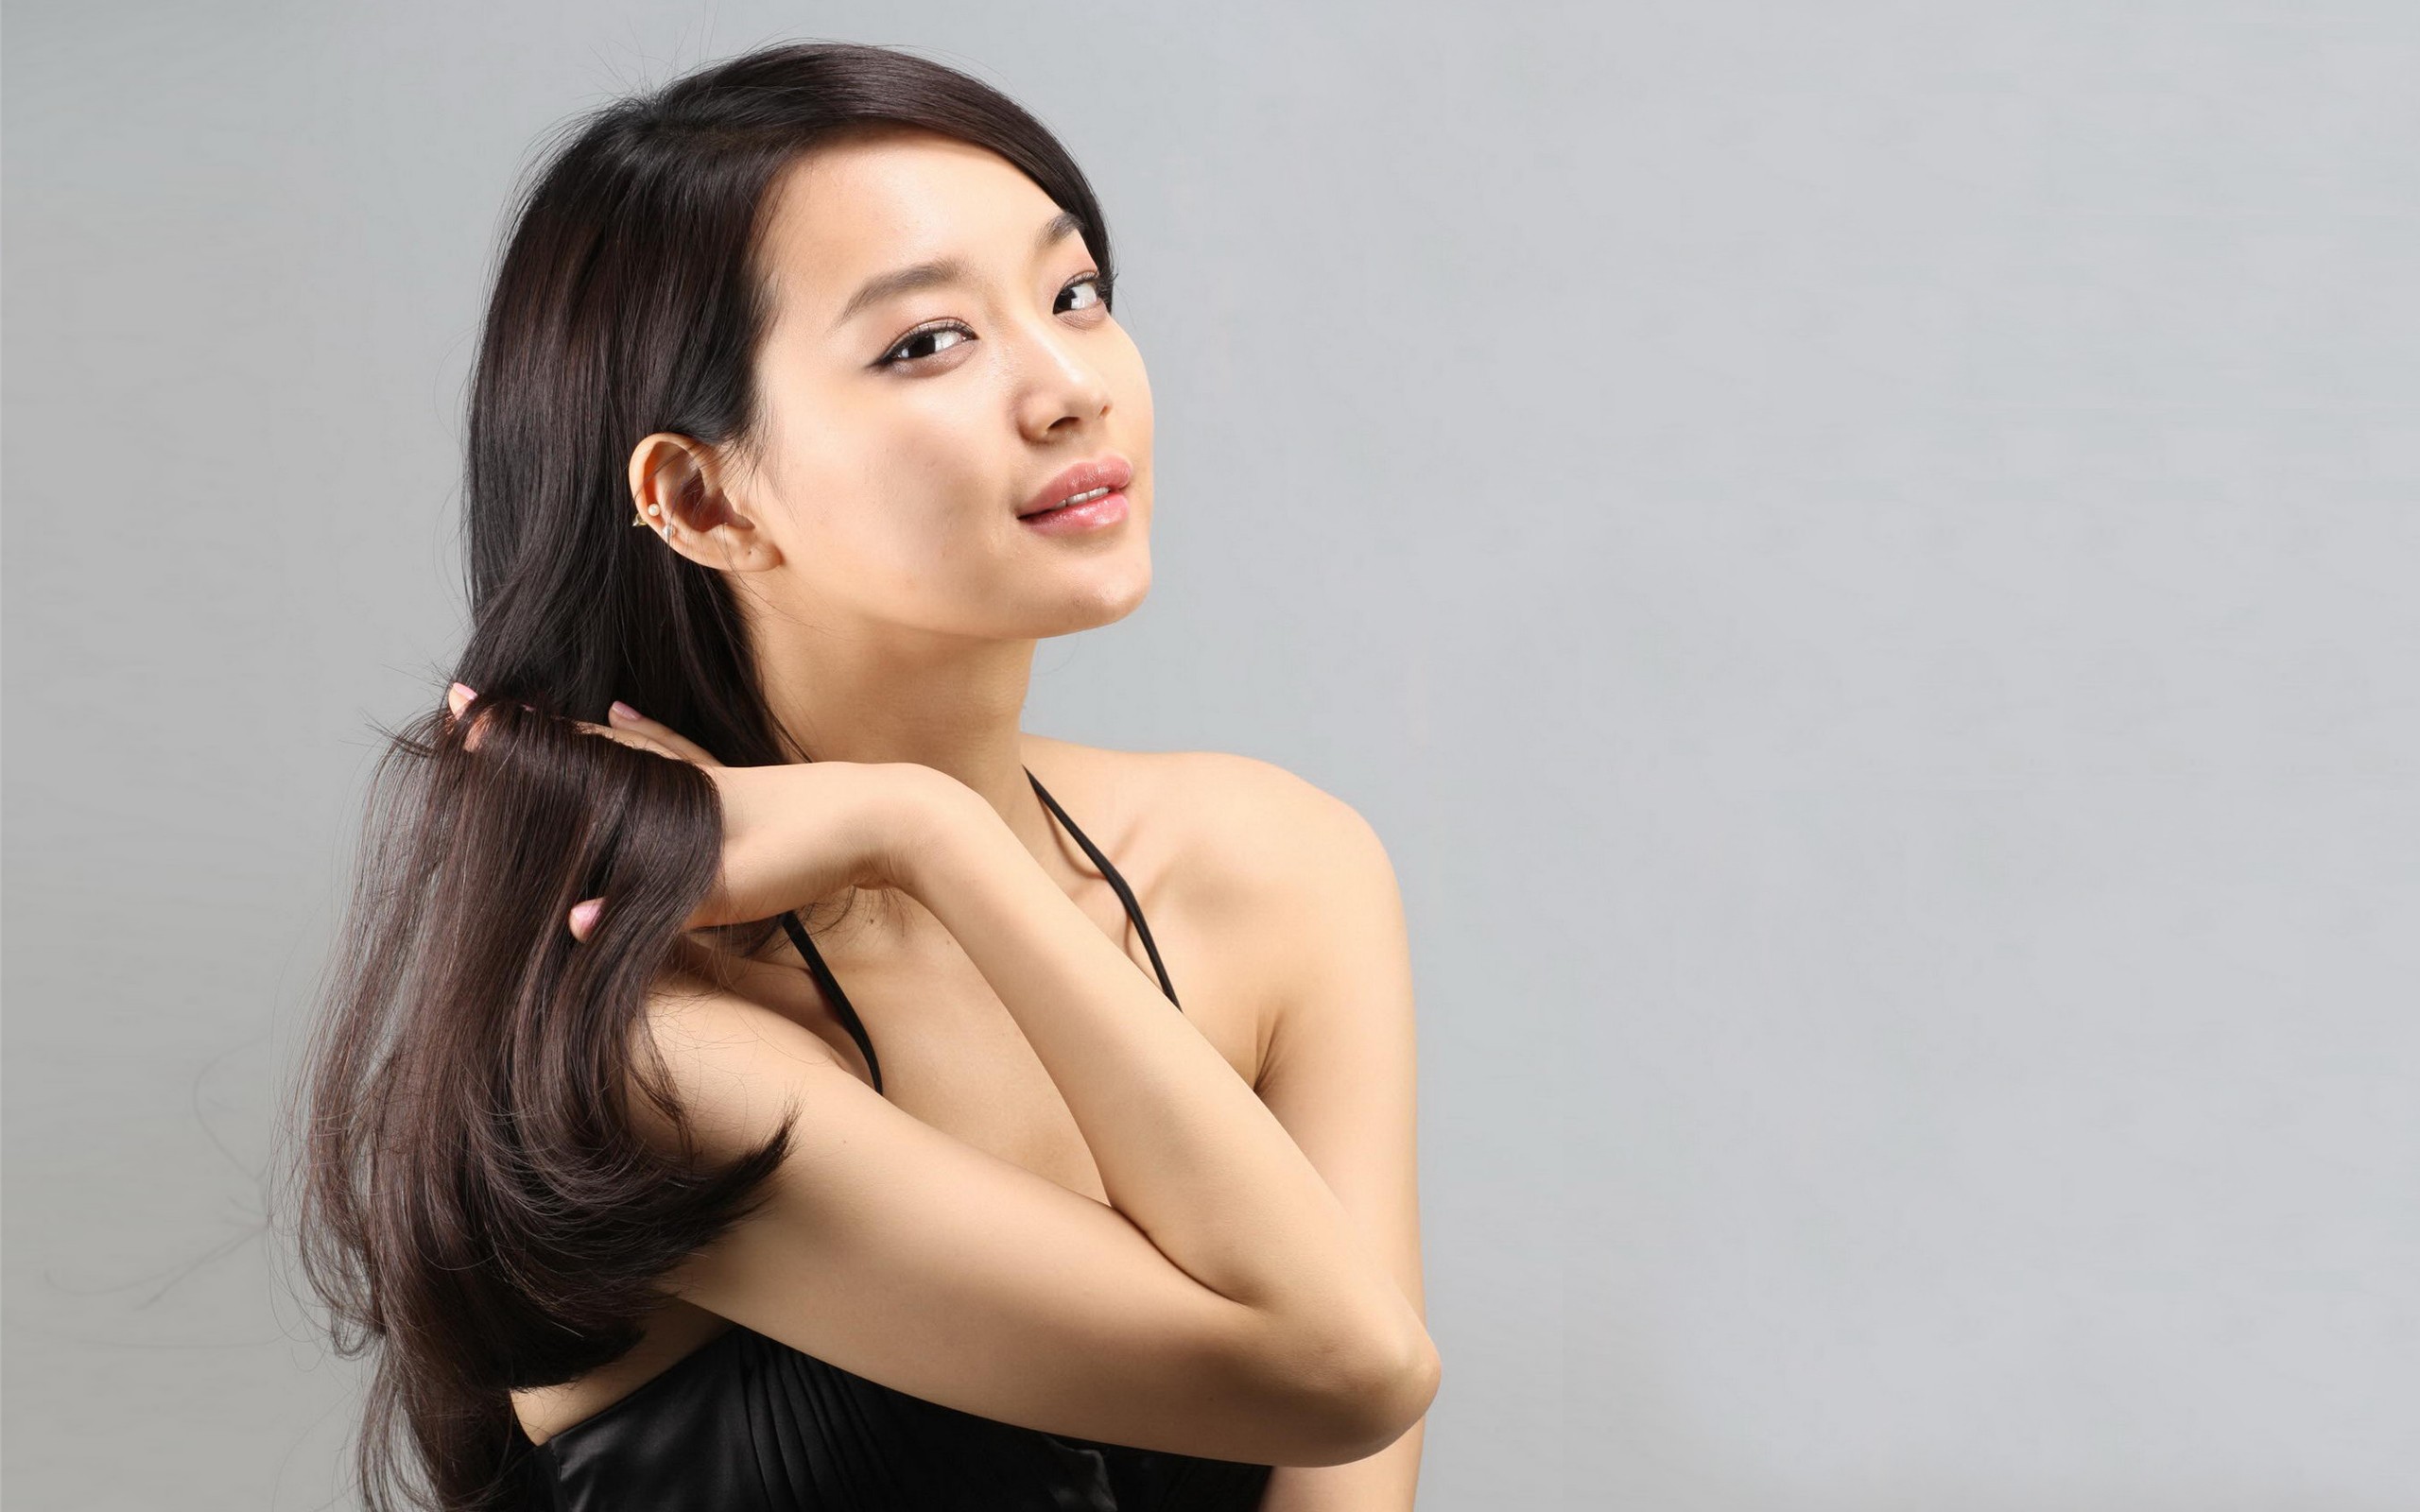 women, models, Asians - desktop wallpaper